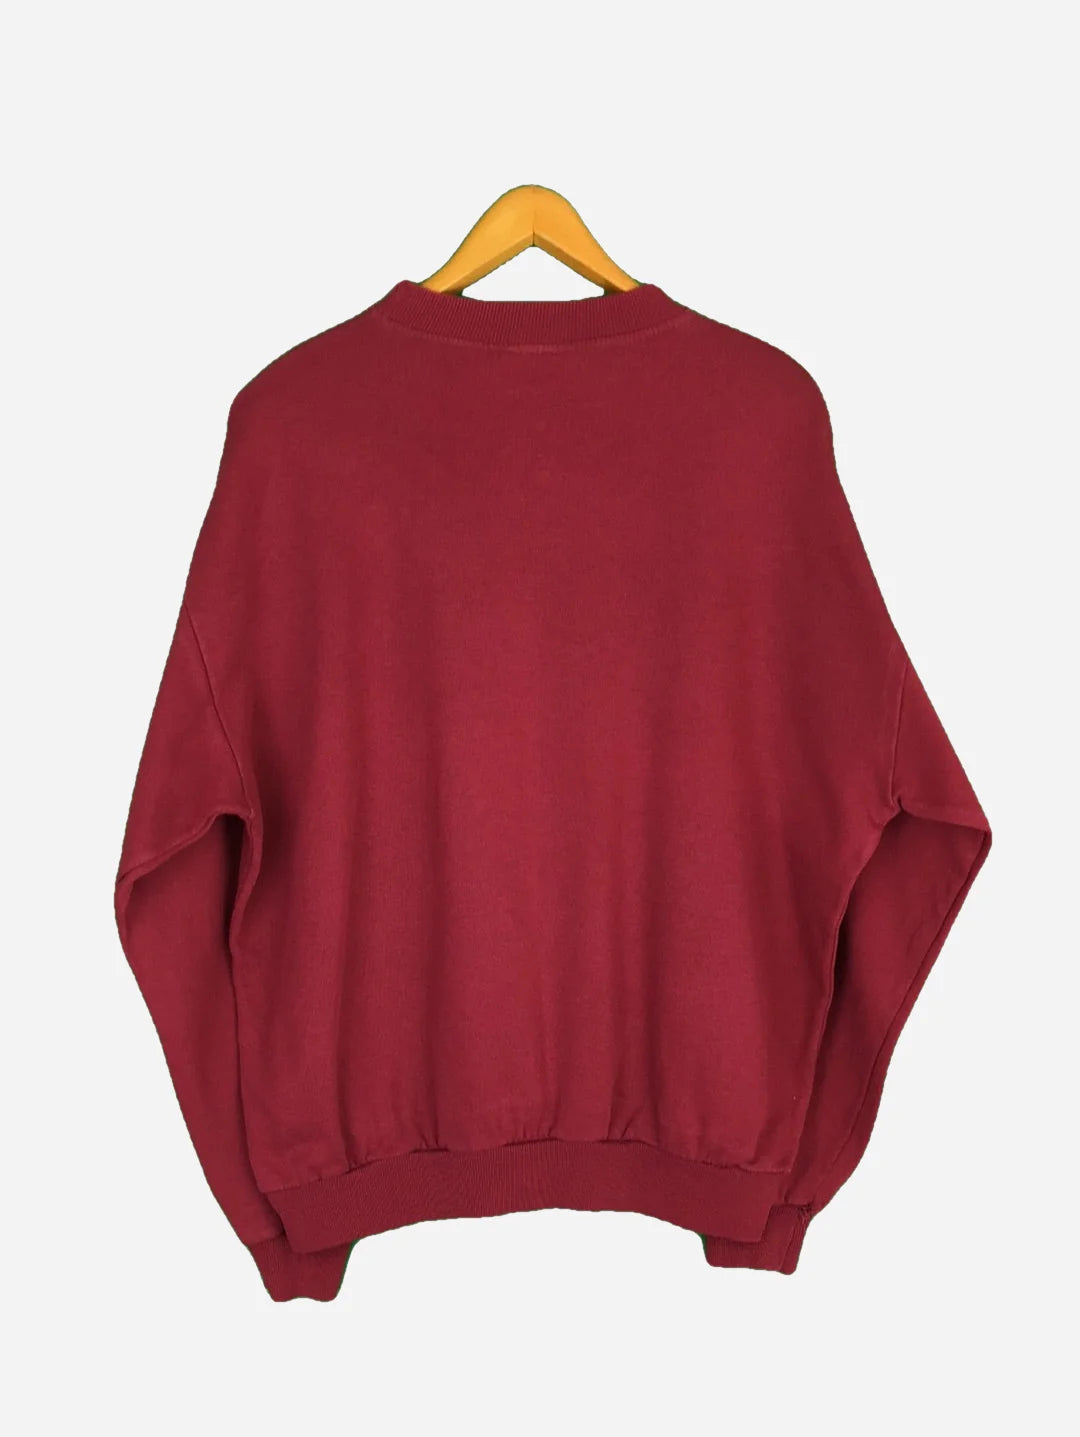 Wrangler Sweater (L)